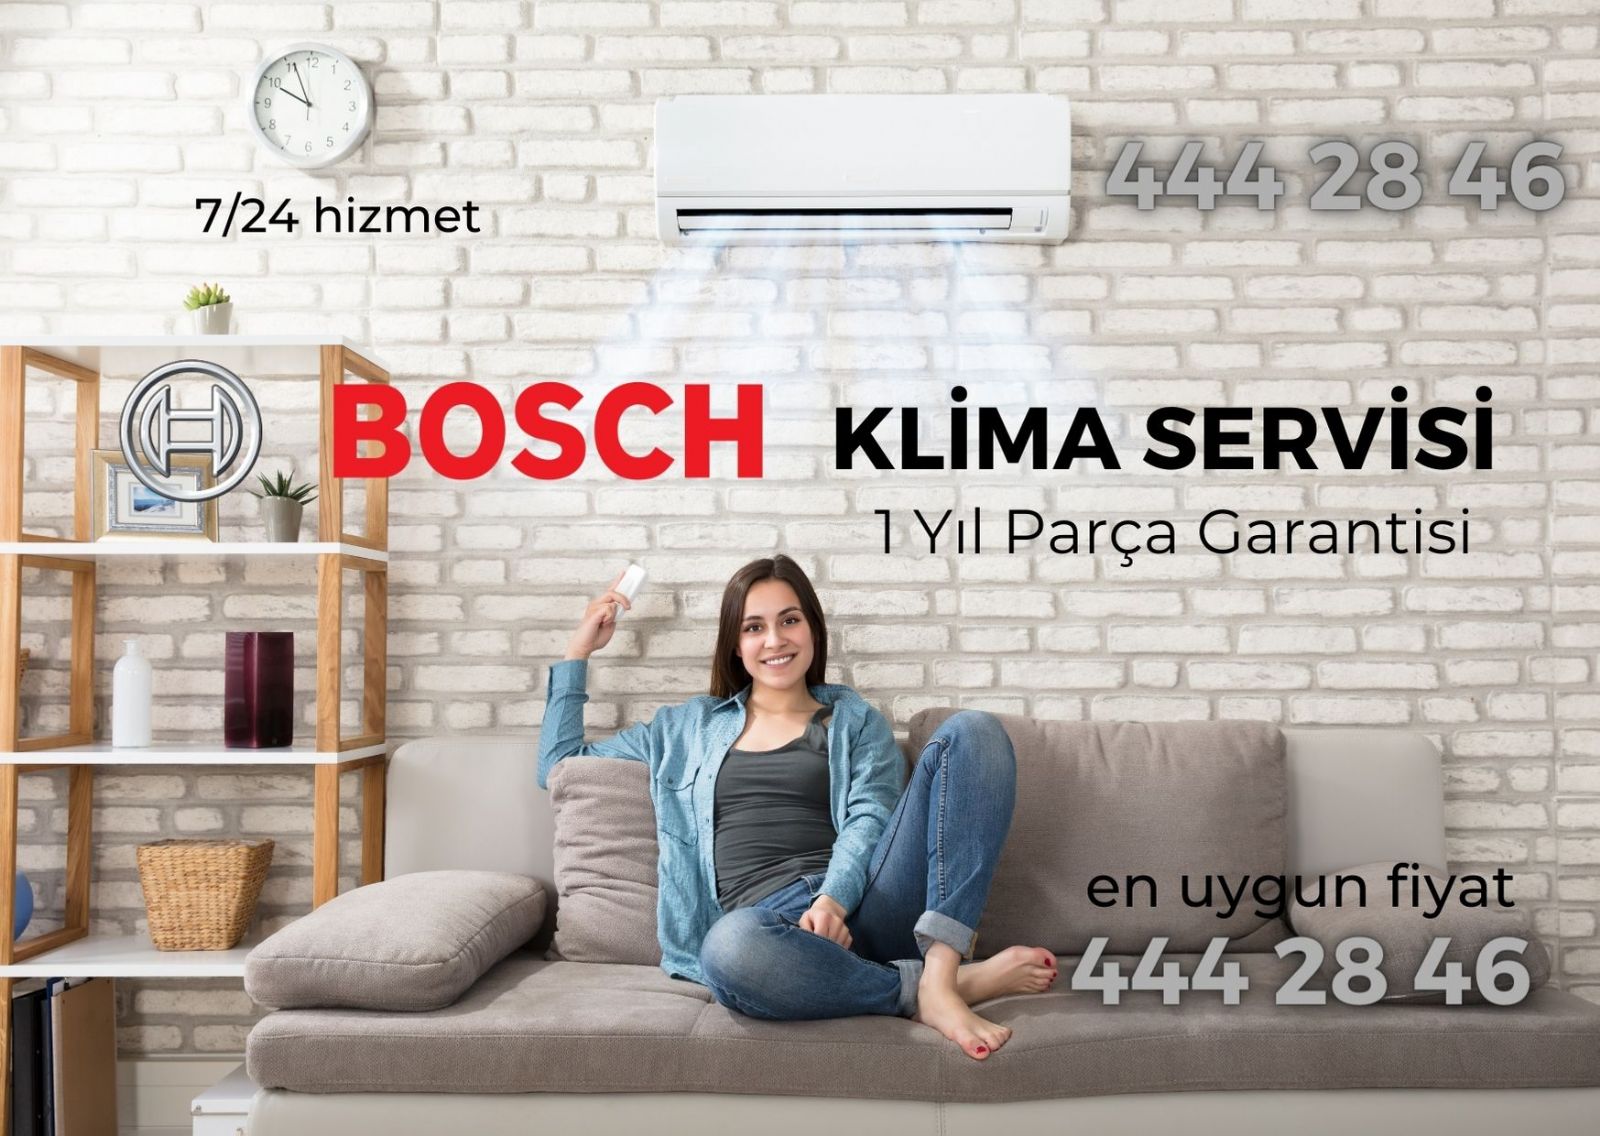 bosch klima servisi bakım fiyatları